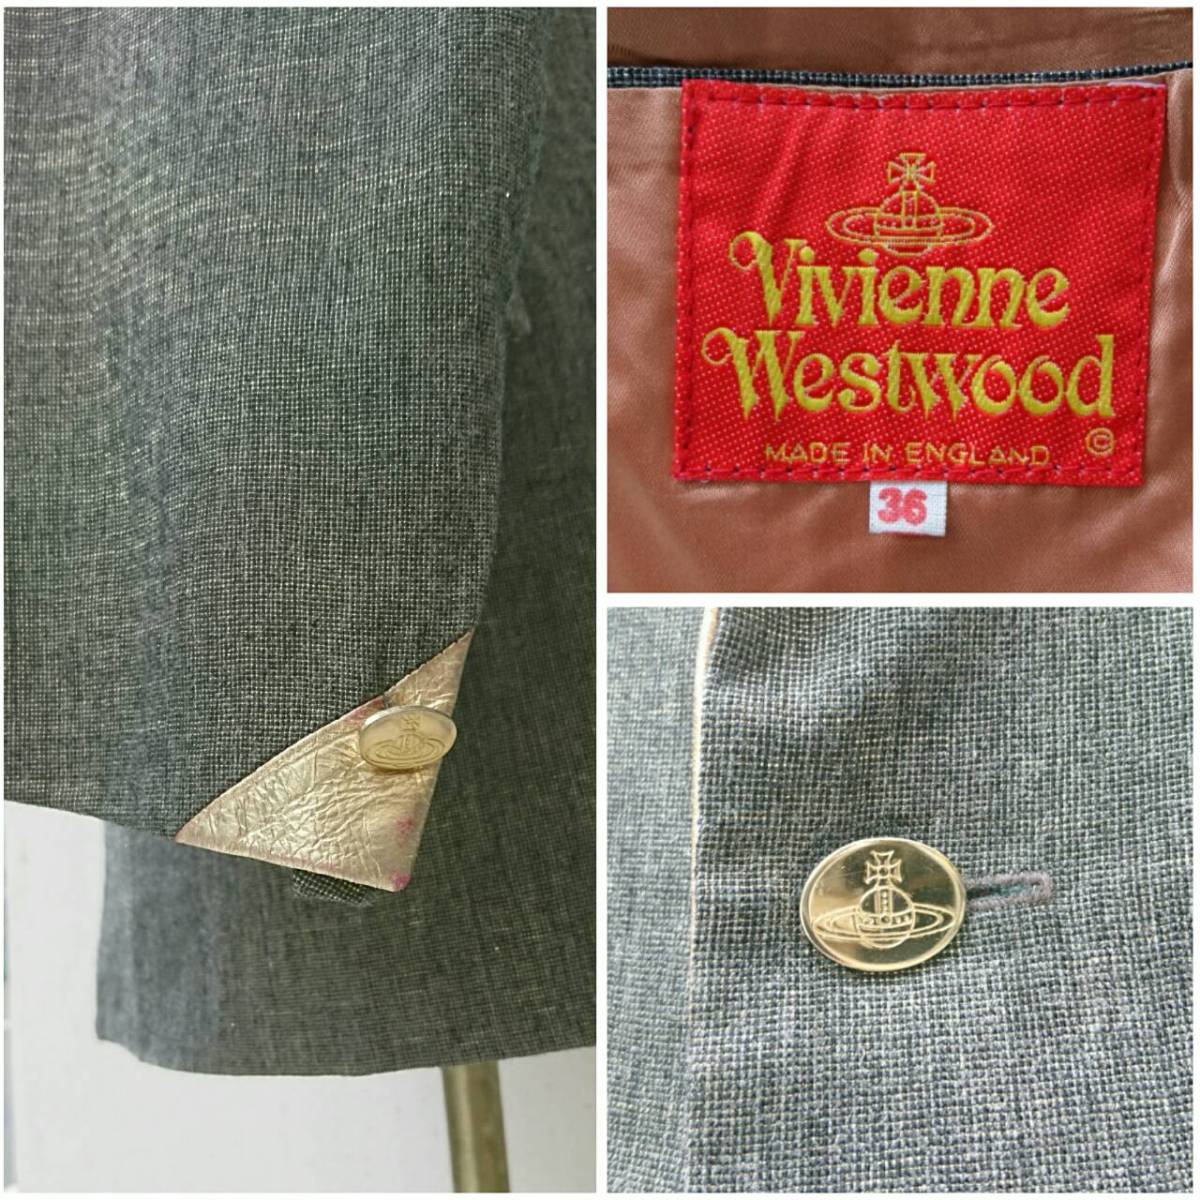 VivienneWestwood Vivienne Westwood Vivienne жакет одиночный jacket gray silver o-vuwool шерсть 36 MV220